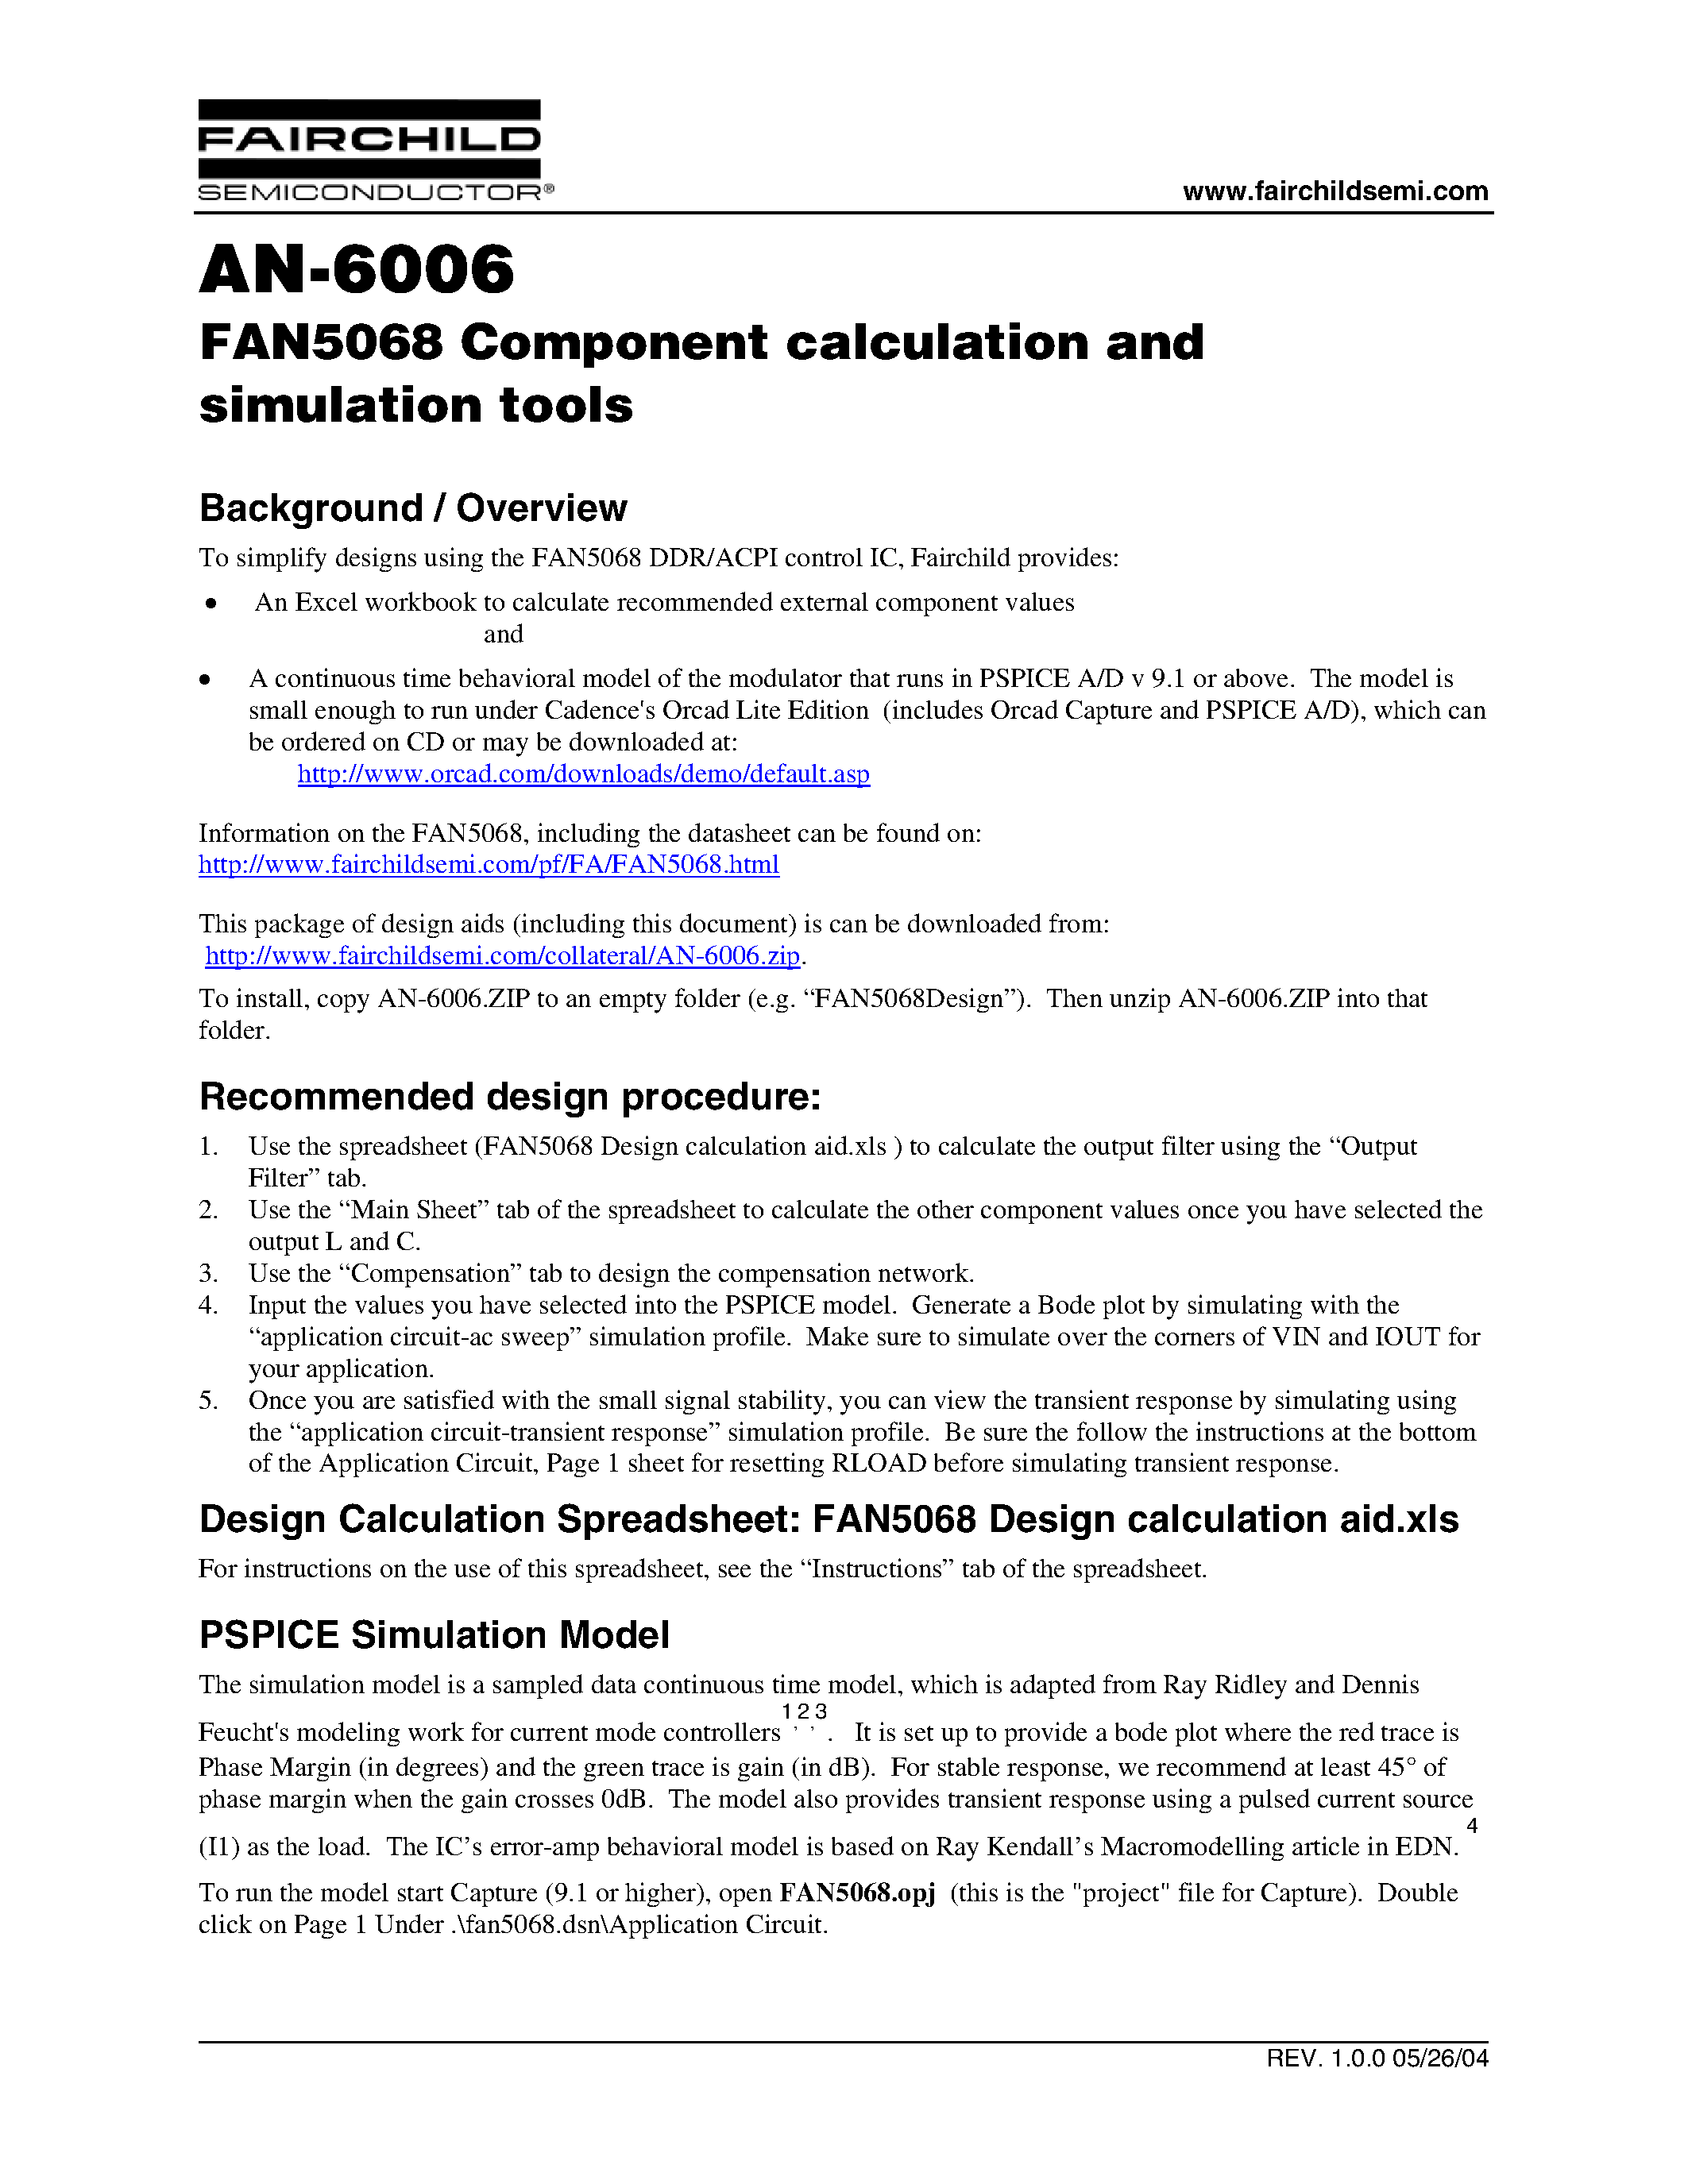 Даташит FAN5068ACPI - FAN5068 Component calculation and simulation tools страница 1